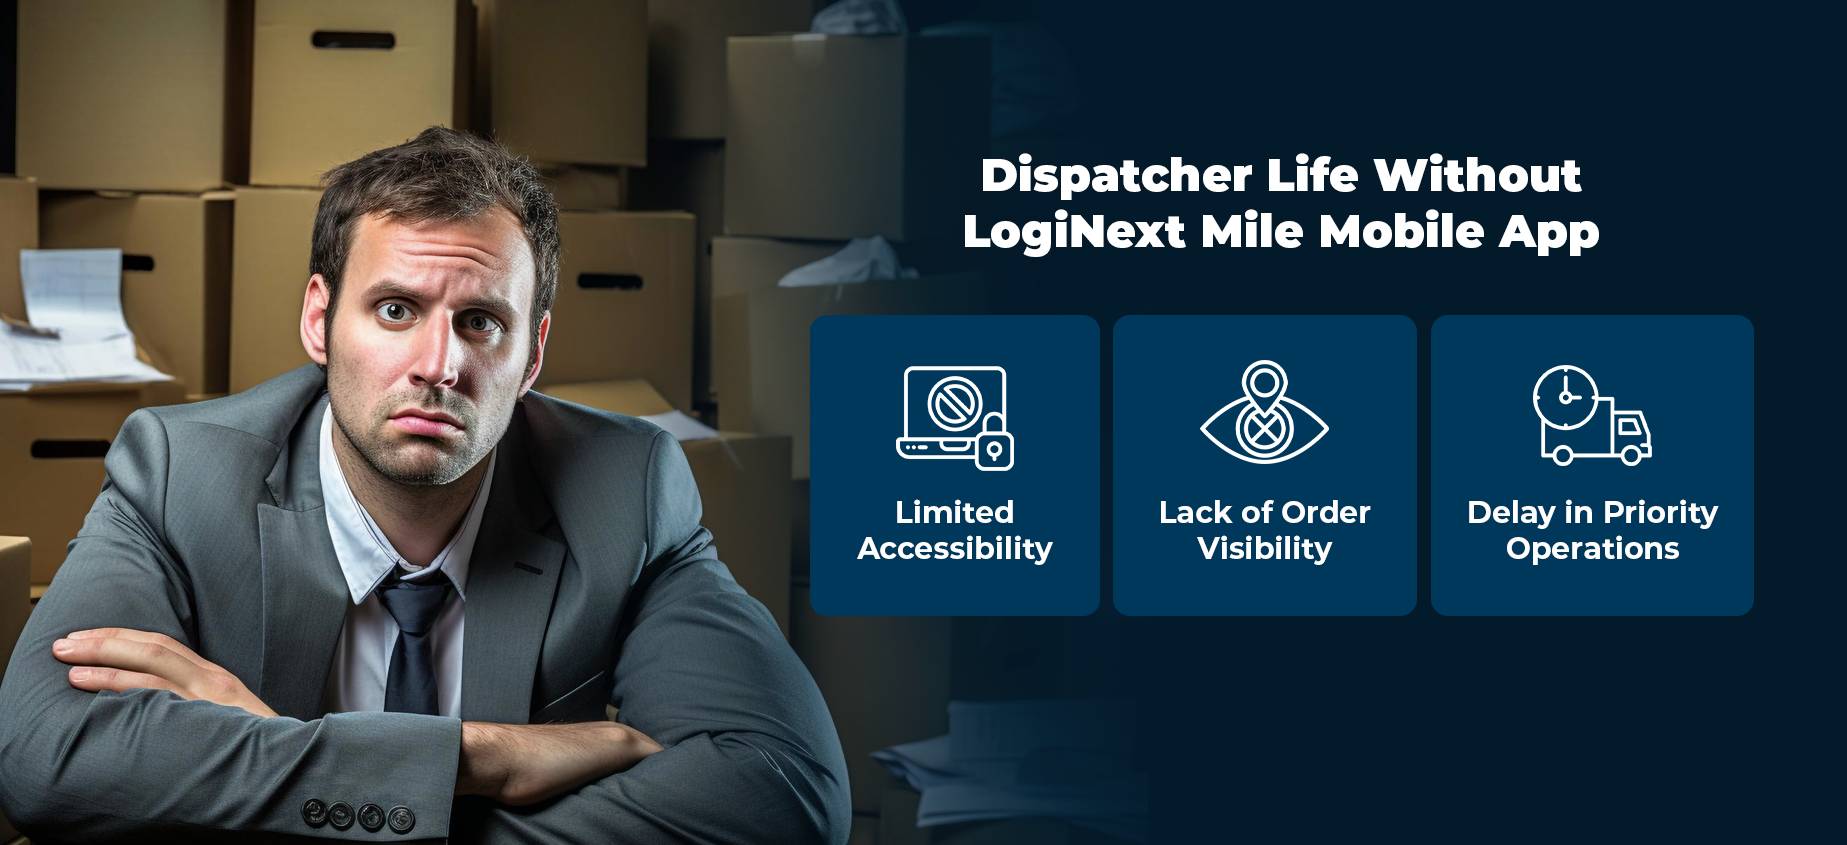 Aplicación móvil Dispatcher Life Without Mile